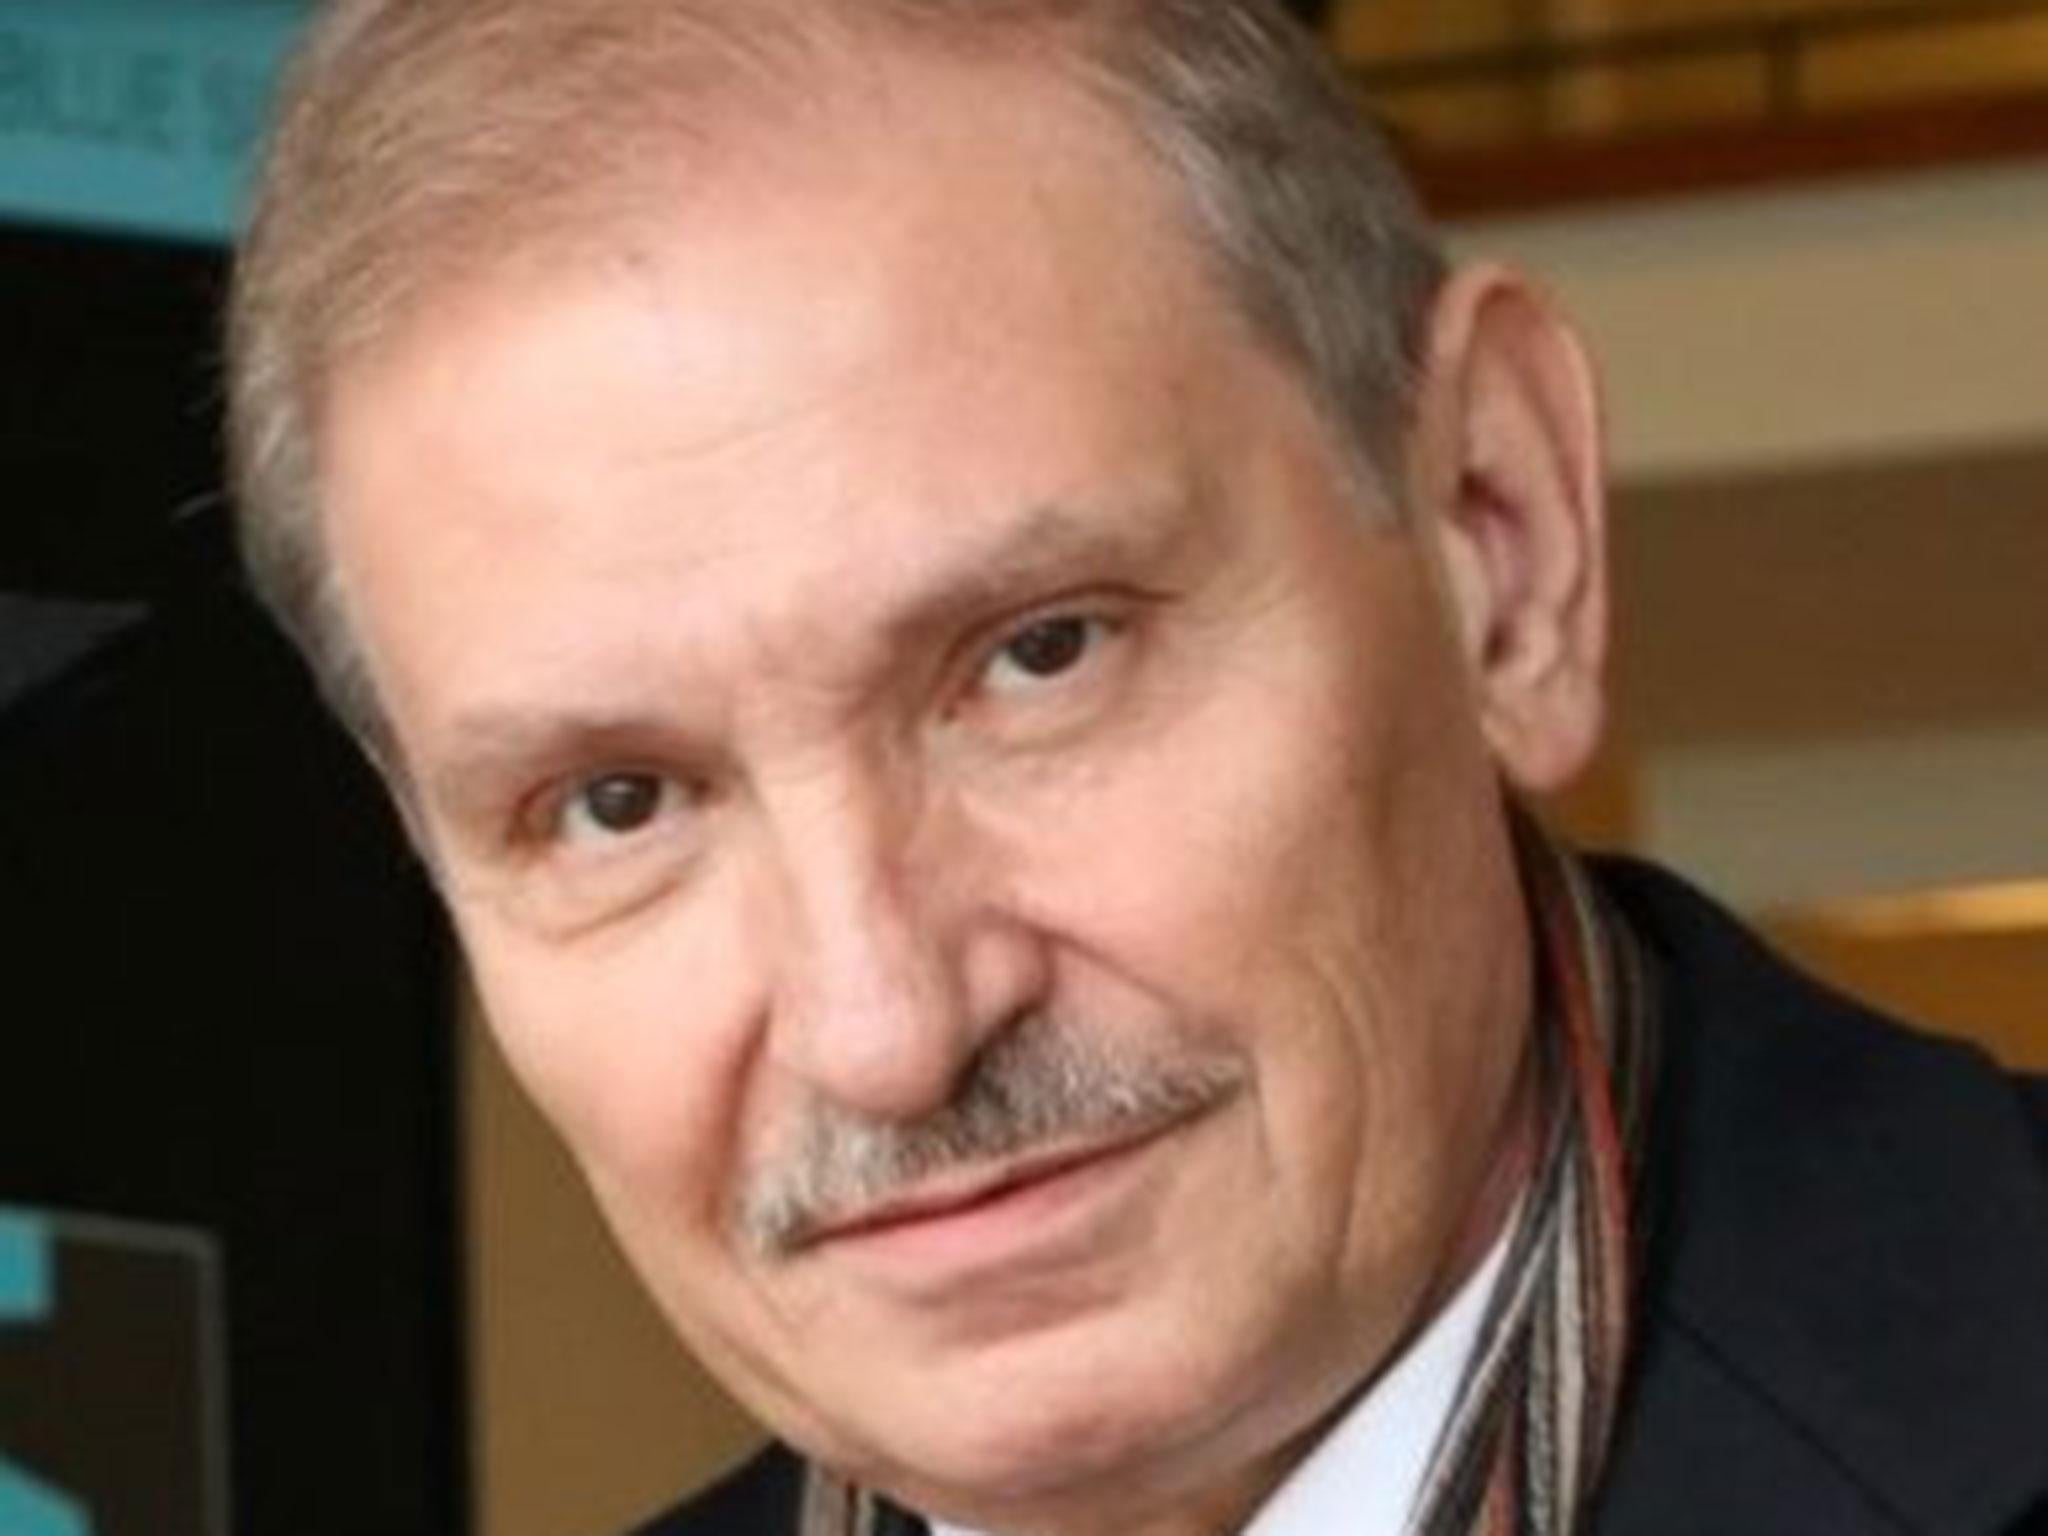 Nikolay Glushkov, 68, had two children